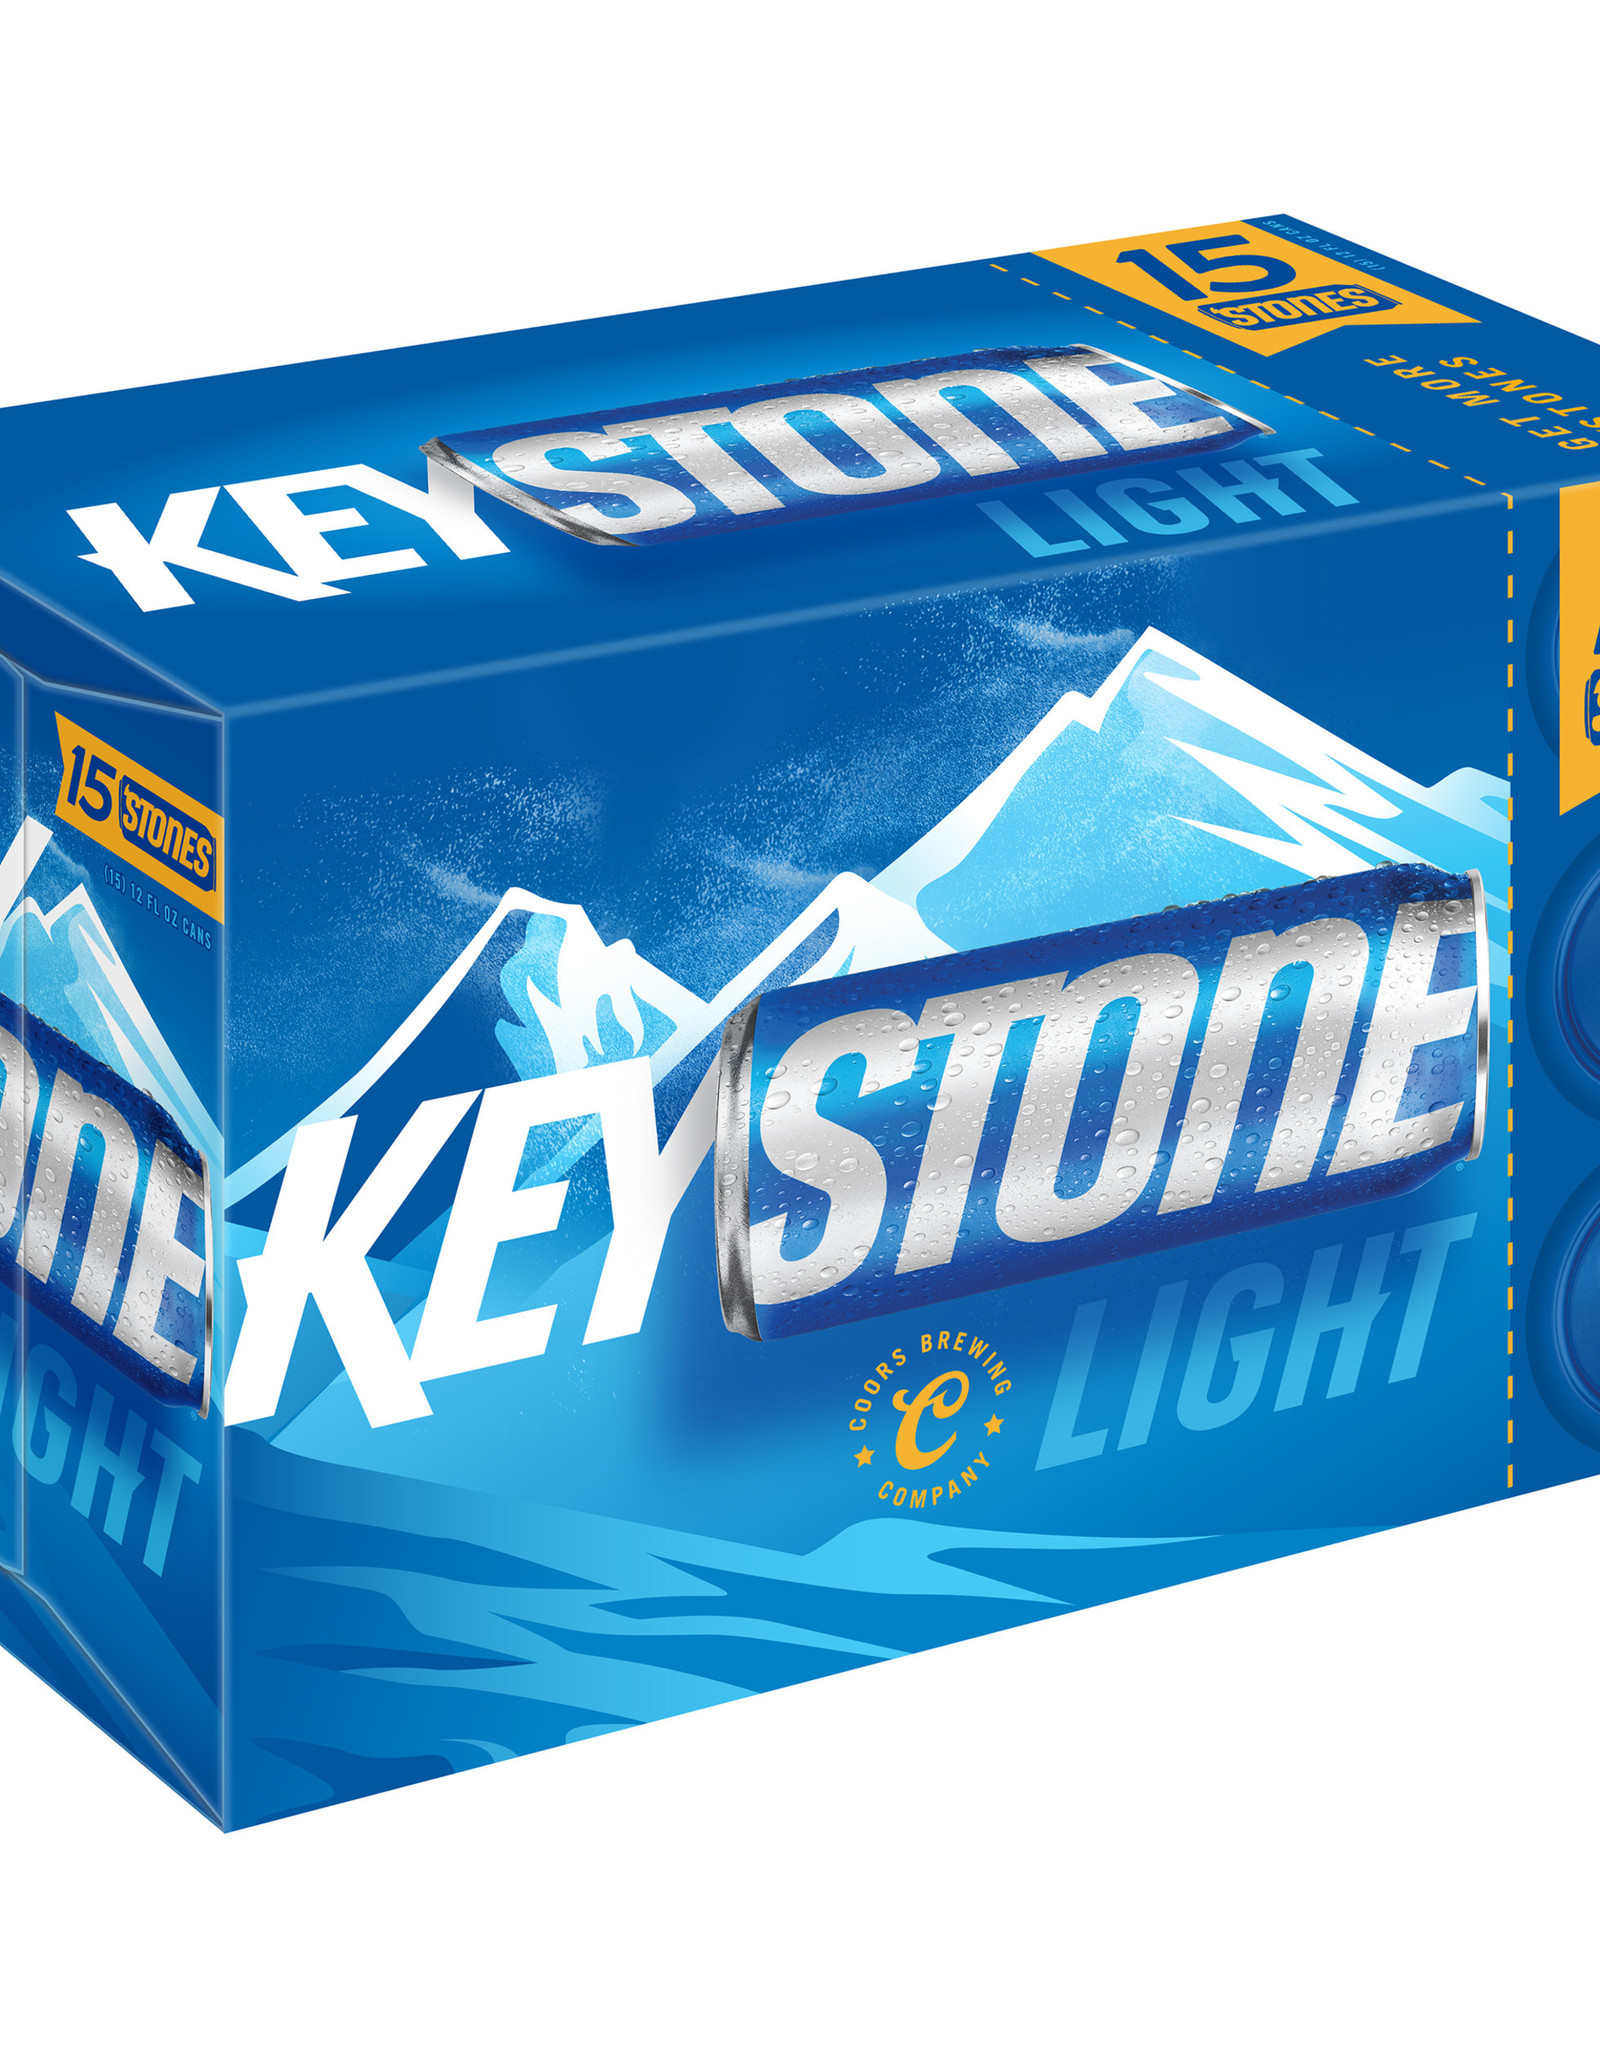 Keystone Light 15x12 oz cans